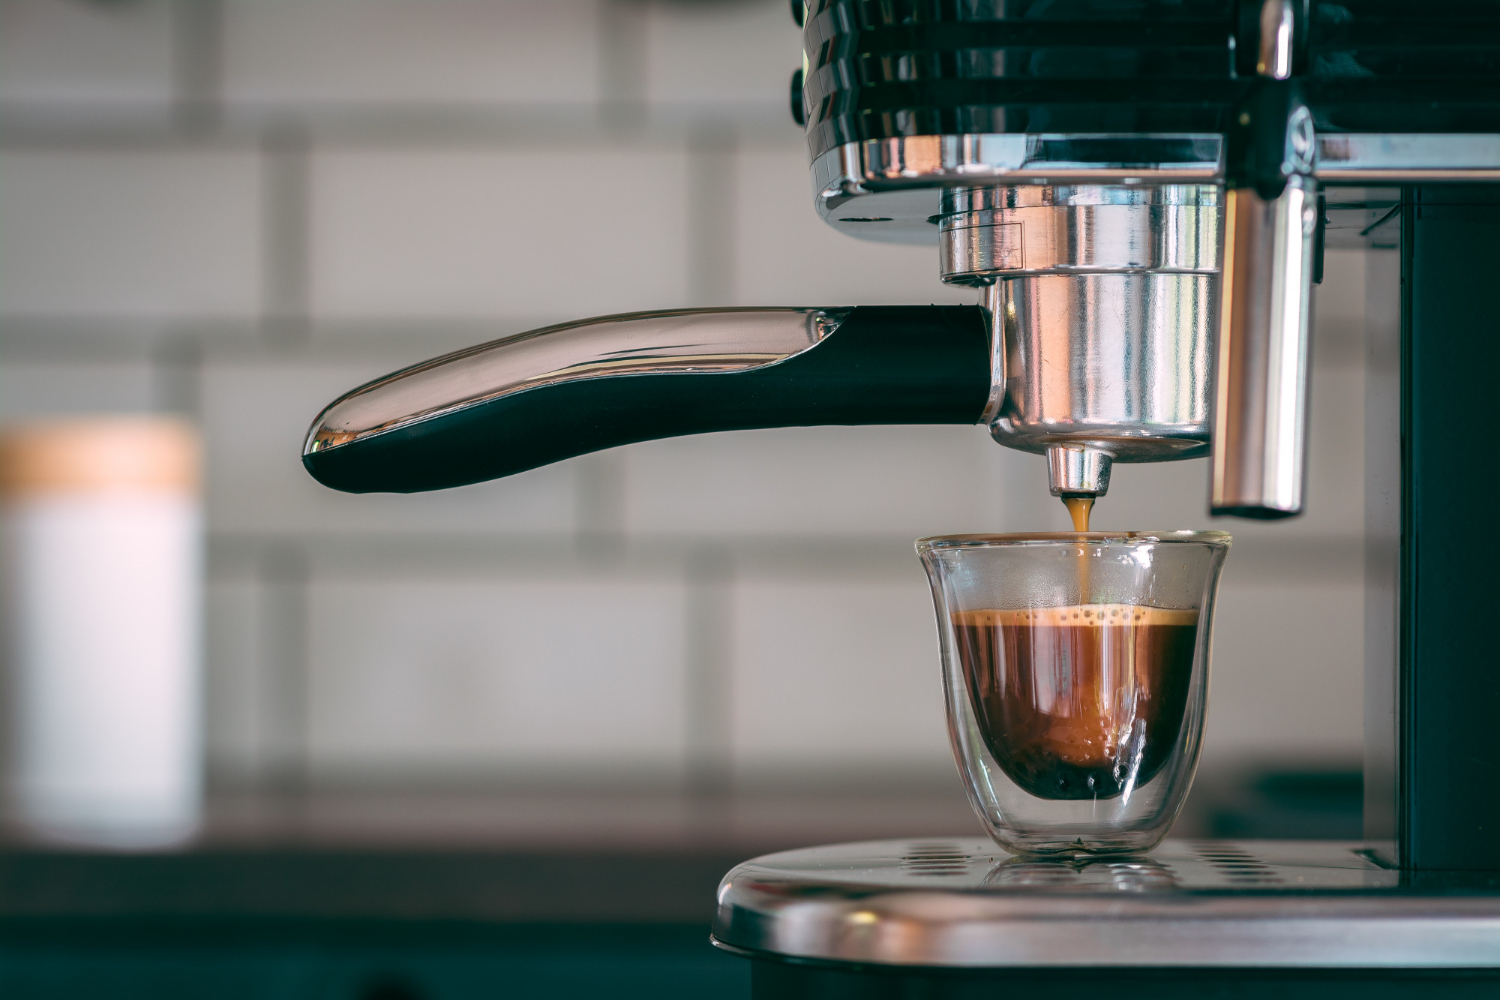 máquina de café espresso; starbucks